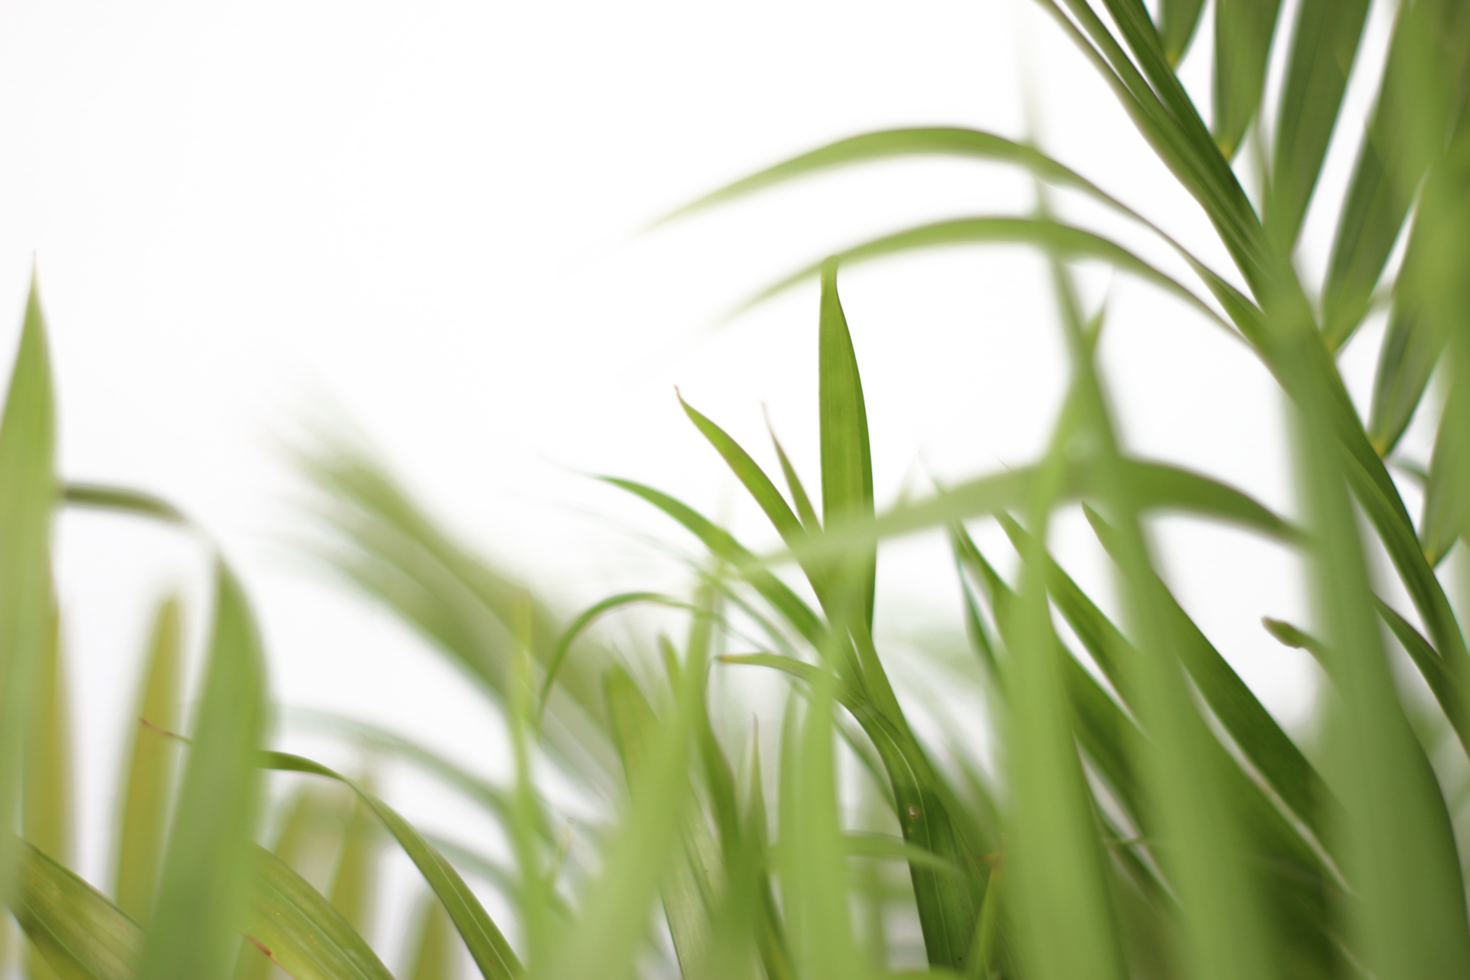 groen tropisch Afdeling palm blad met schaduw Aan transparant achtergrond PNG het dossier